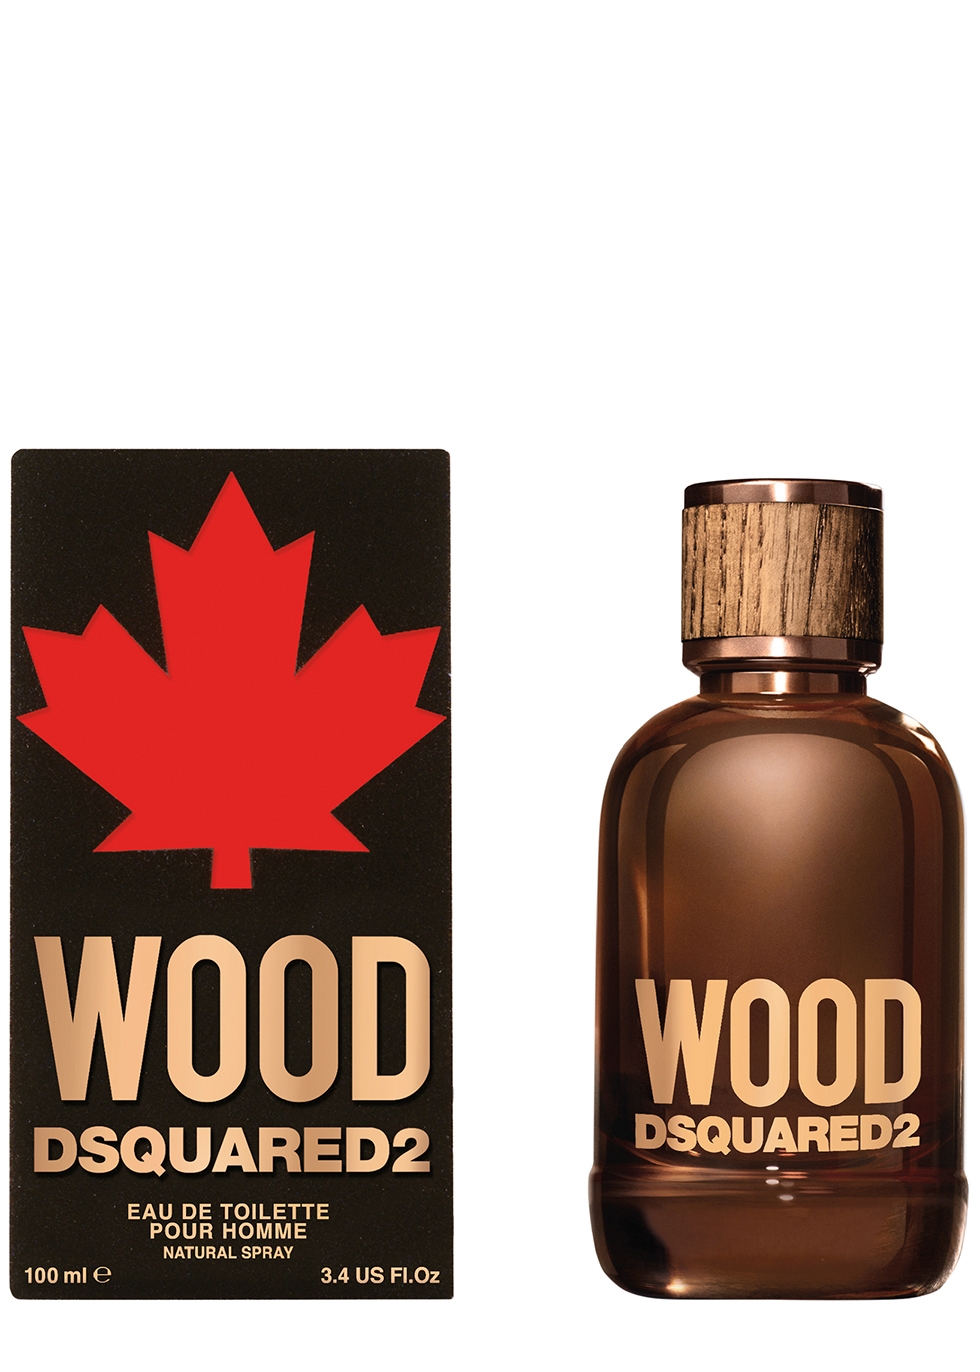 dsquared wood 100 ml